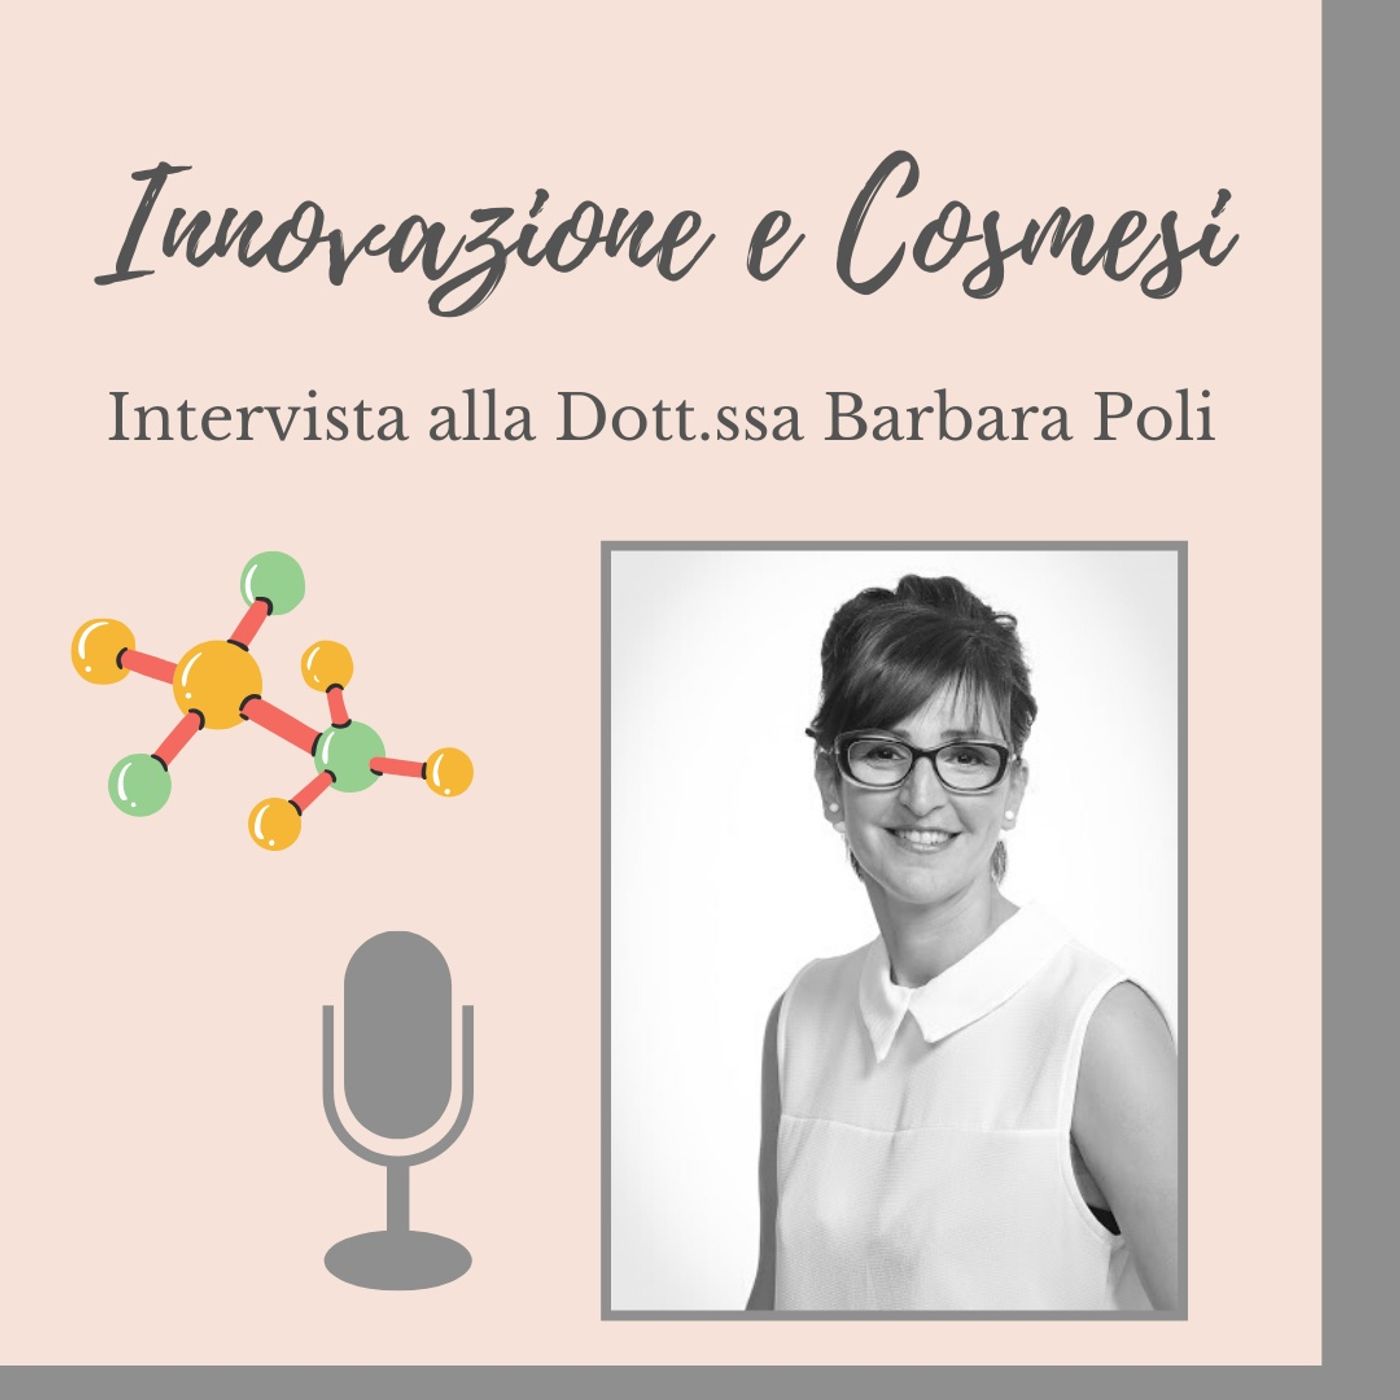 Ep. 24 Innovazione Cosmetica in Italia! Ce ne parla la Dott.ssa  Barbara Poli.